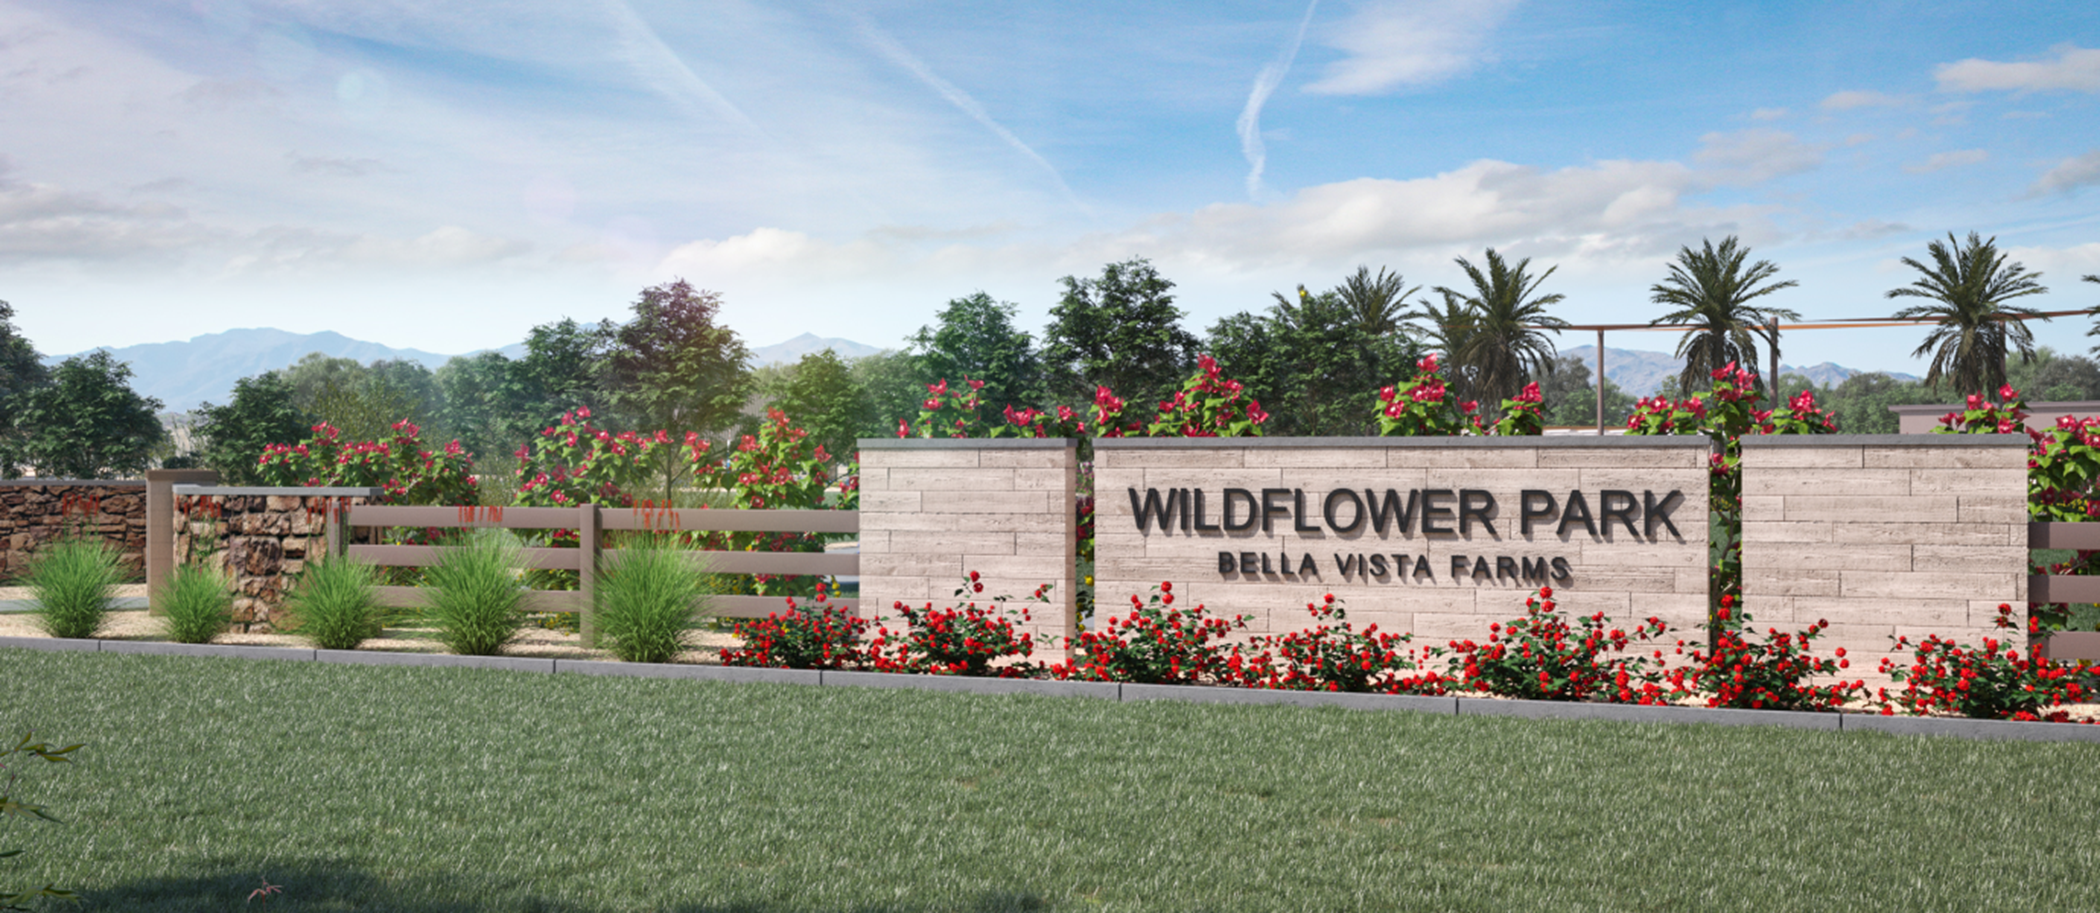 Wildlflower Park monument in Bella Vista Farms